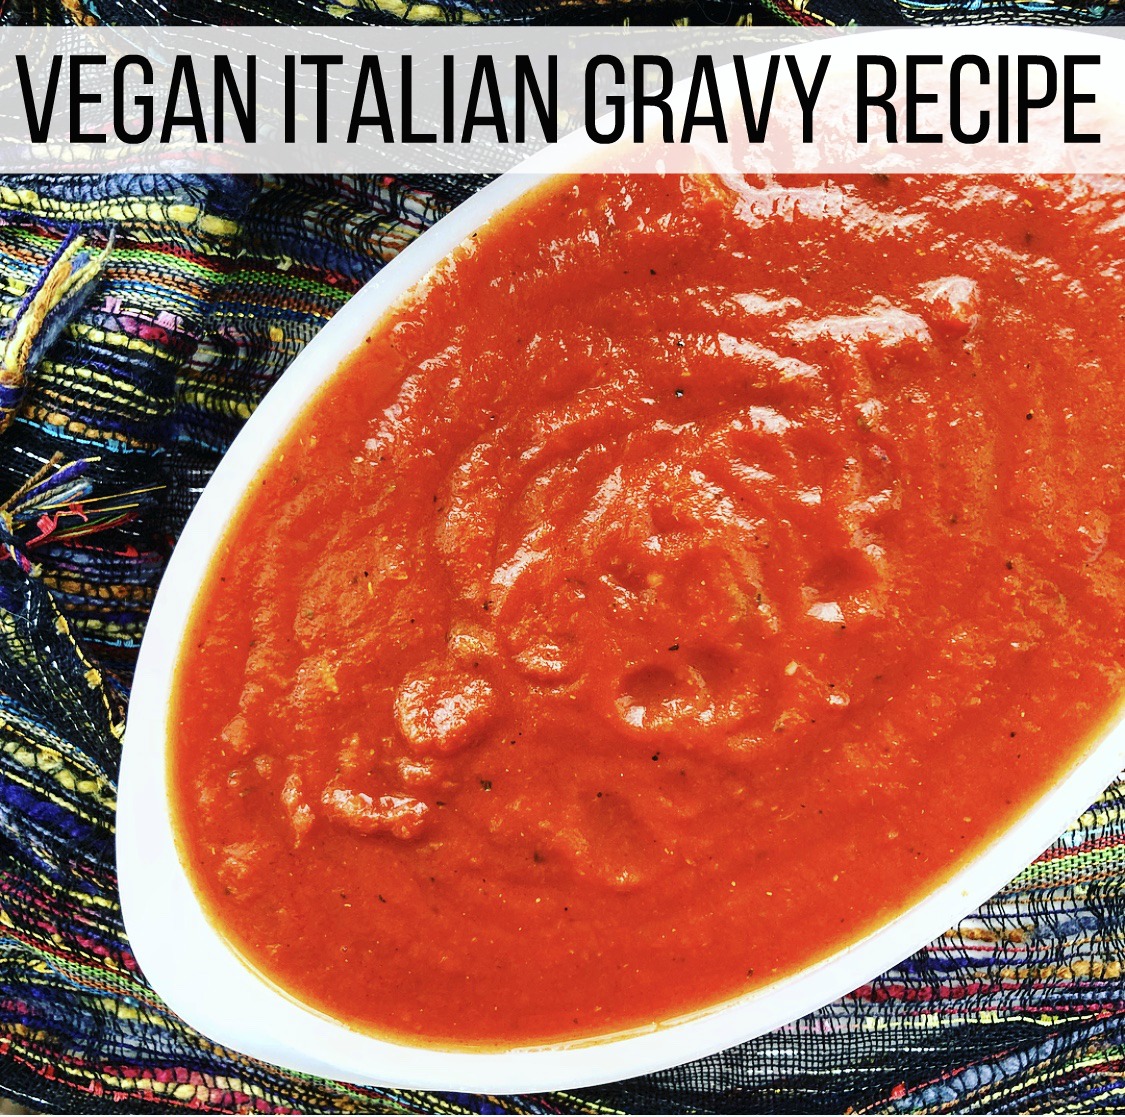 Vegan Italian Gravy Recipe